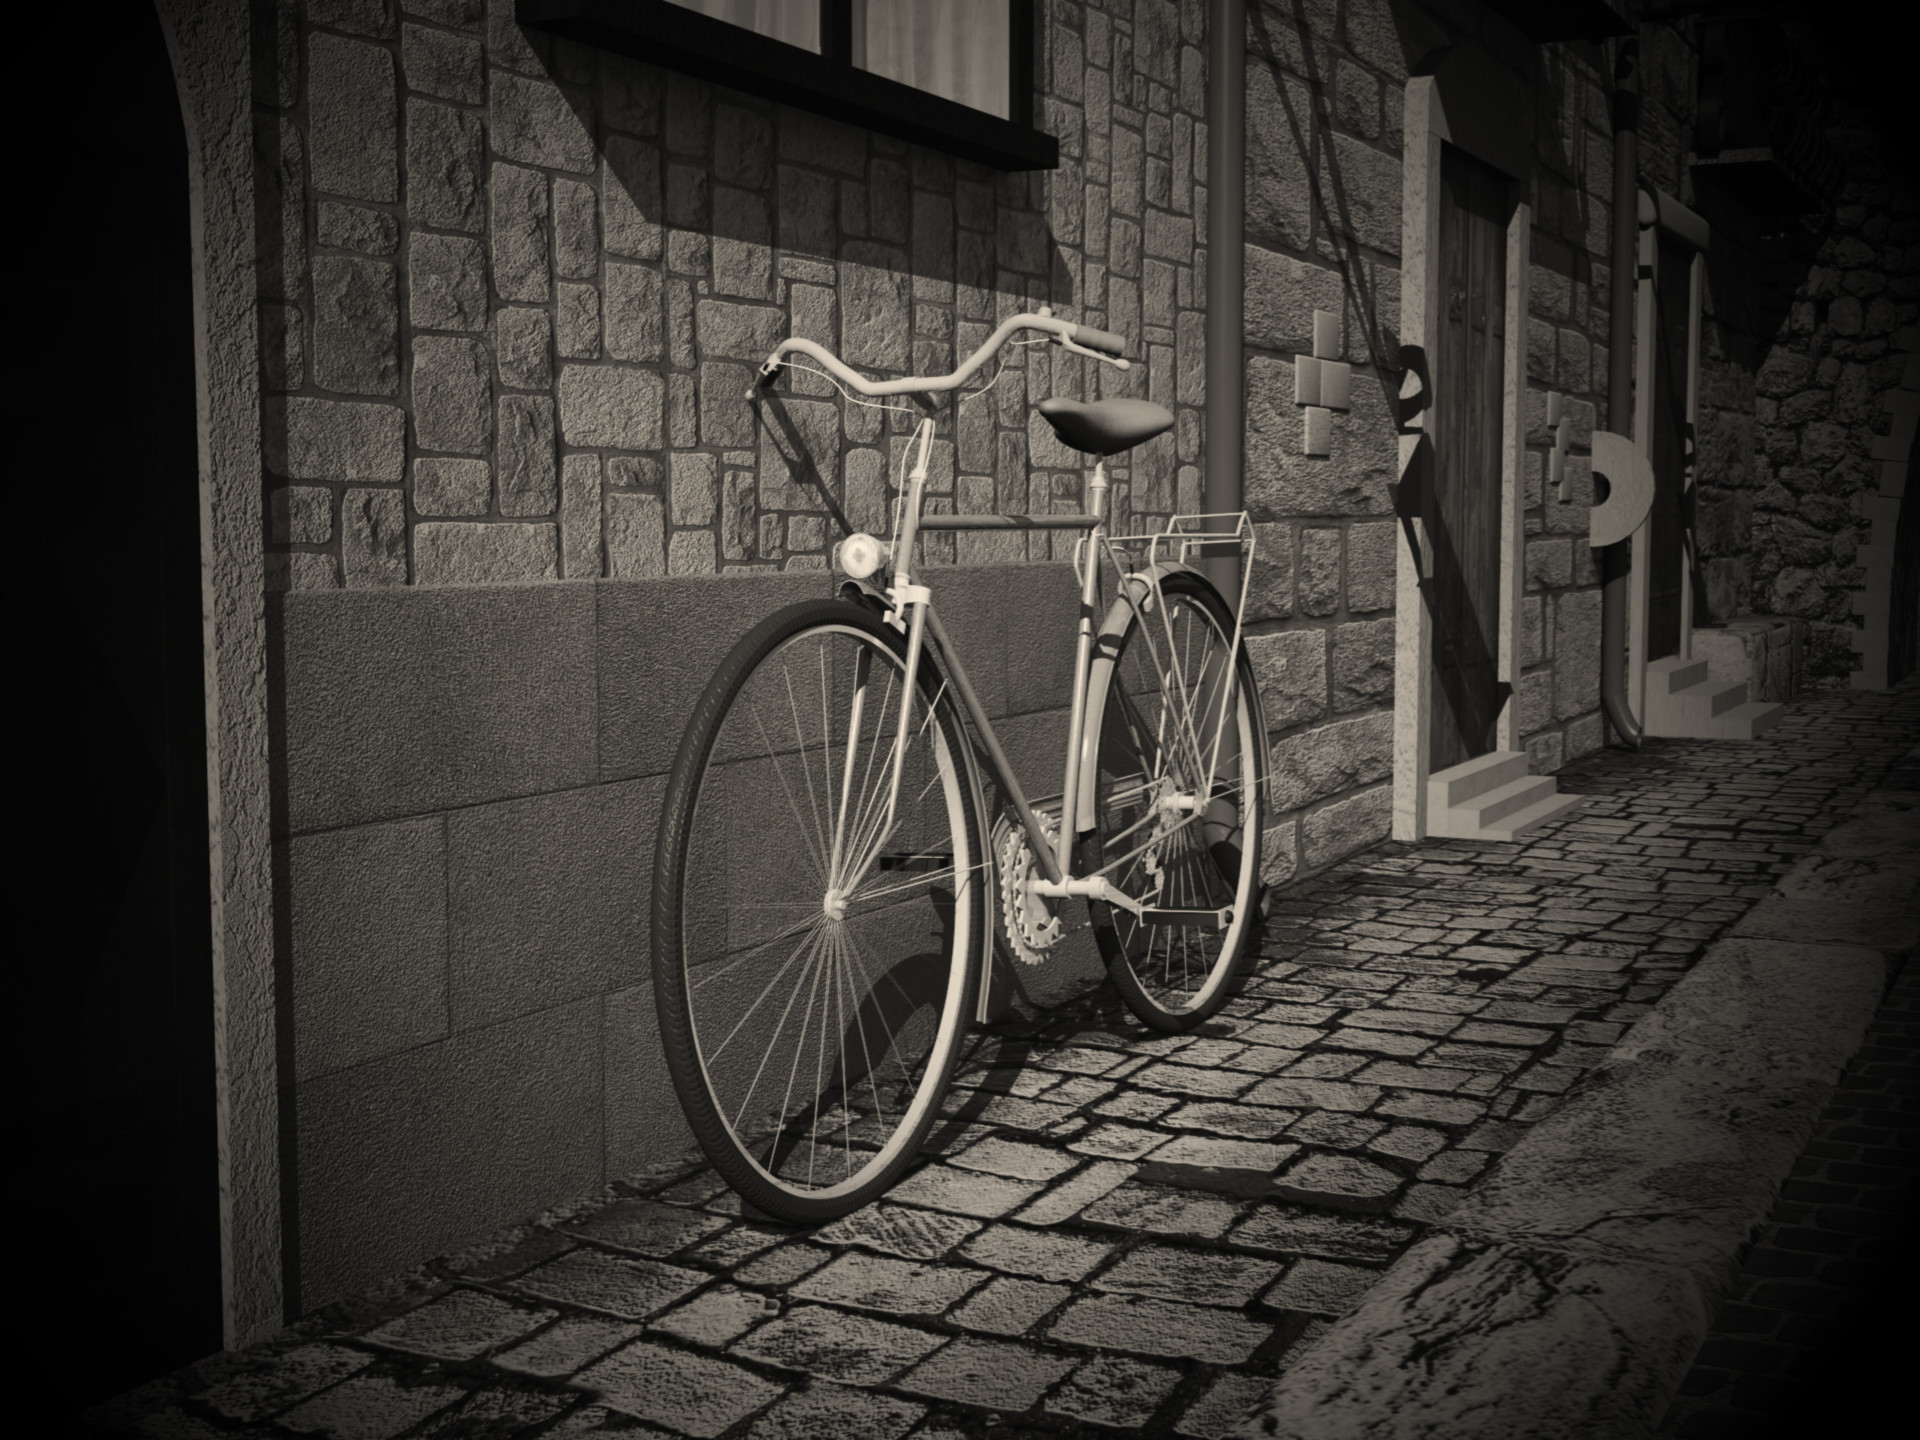 ArtStation - Bike in the village